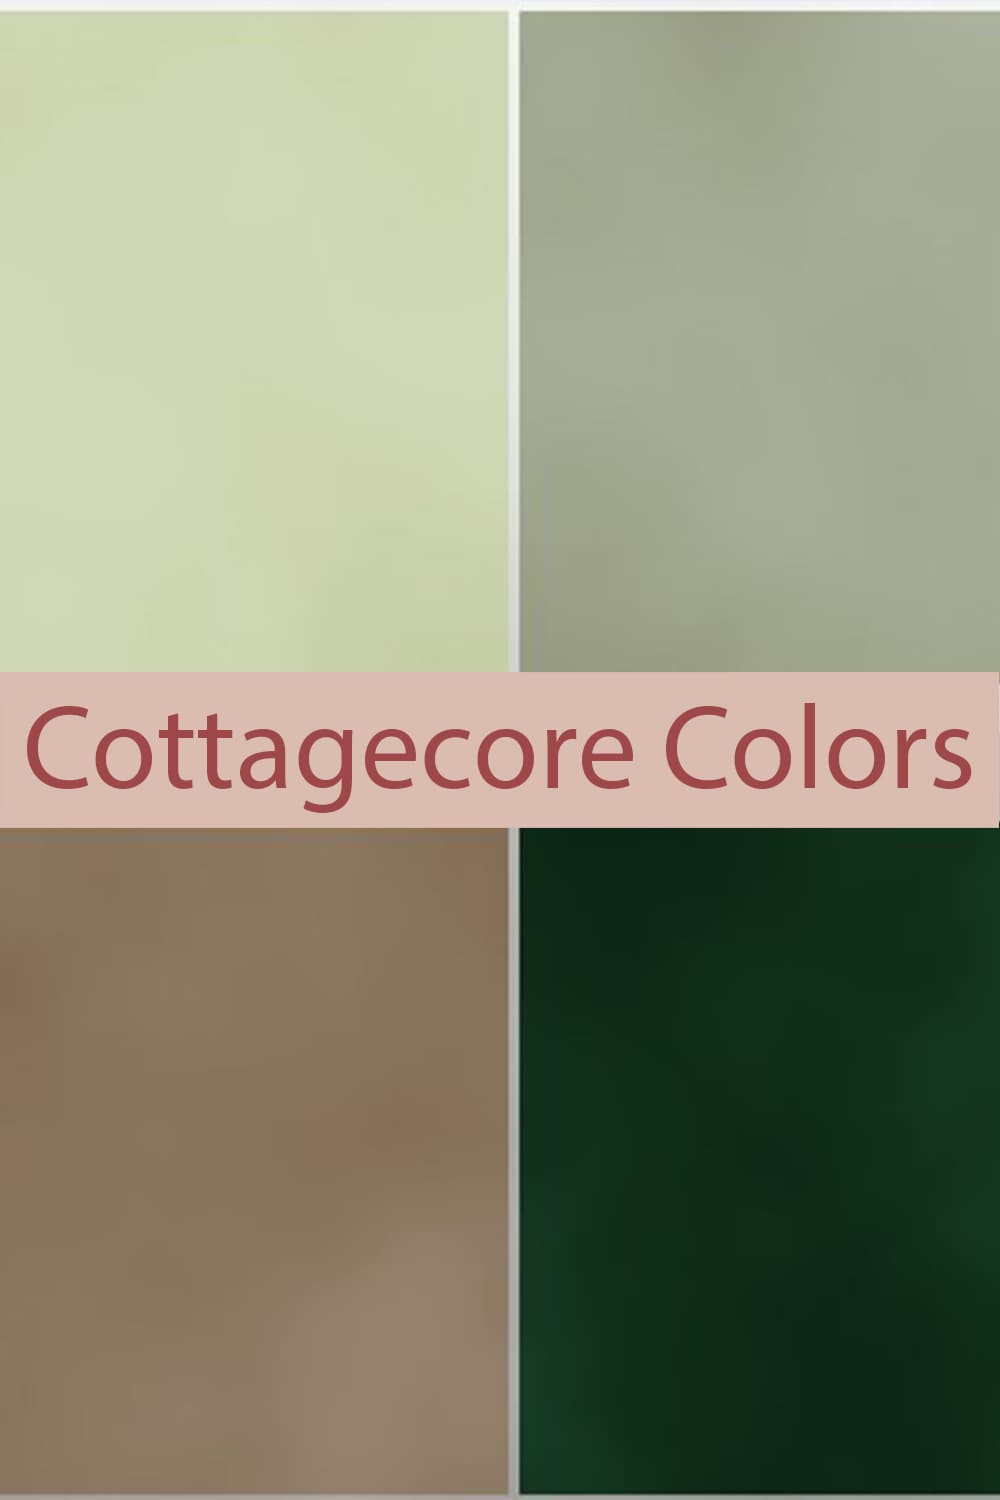 Cottagecore Colors Pinterest 1000x1500 1